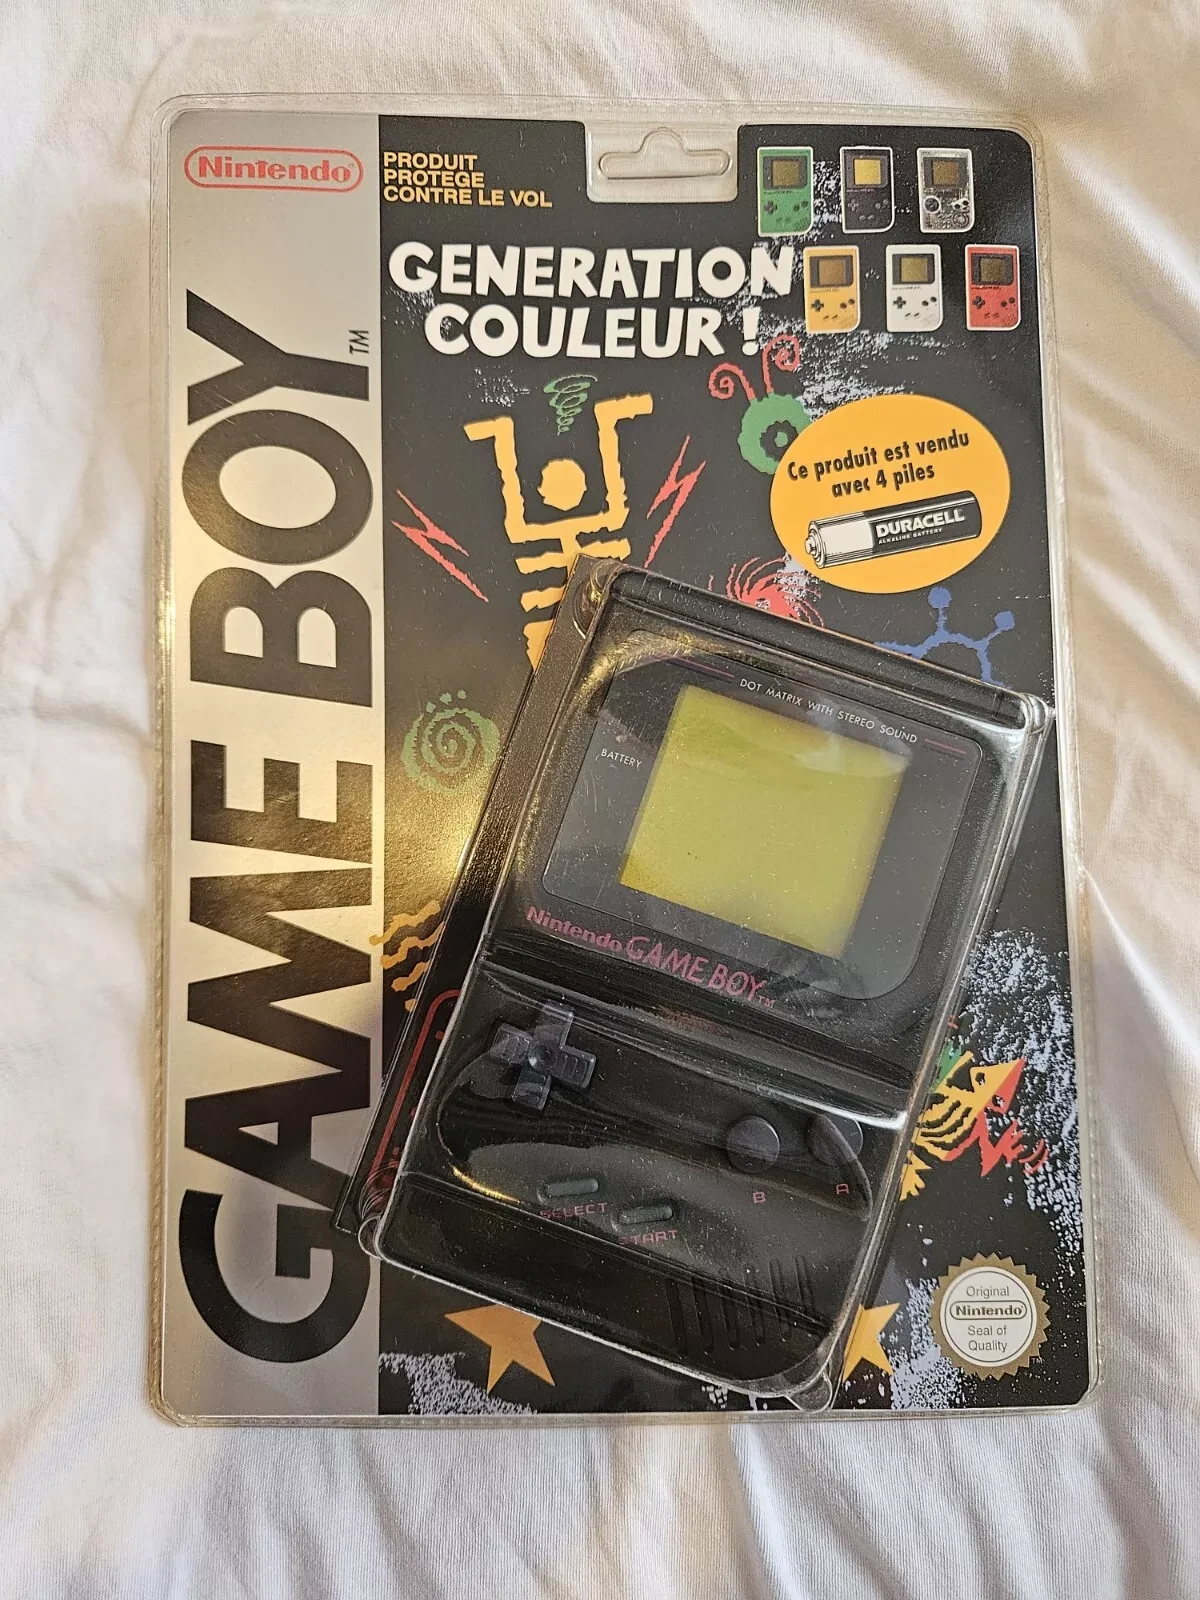 Nintendo Game Boy Generation Couleur Black Console